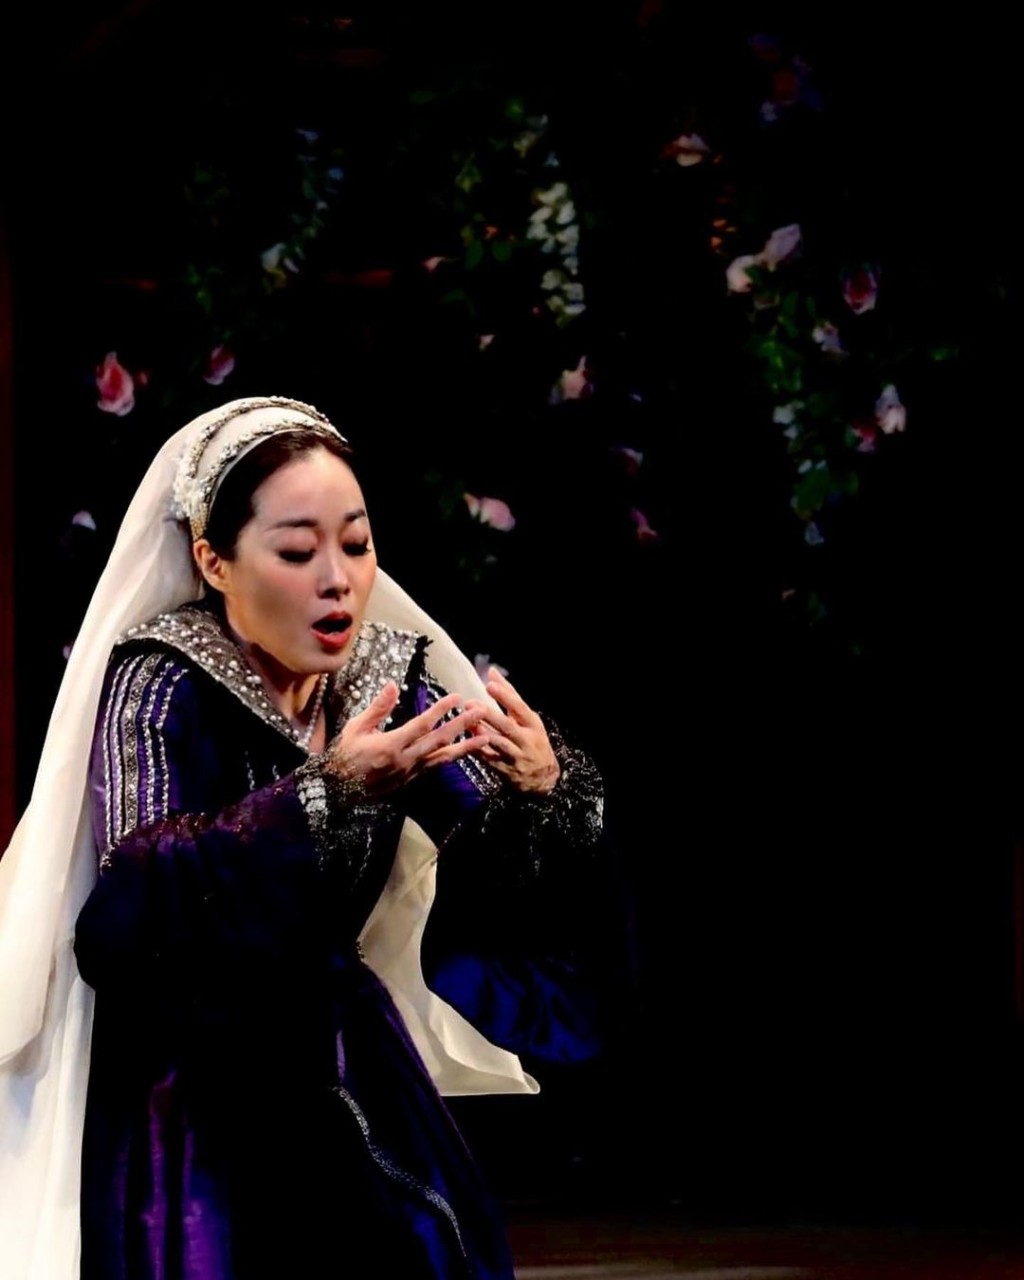 去年李尚恩曾来港演出「香港大会堂60周年志庆节目」音乐剧《血洒英廷》。